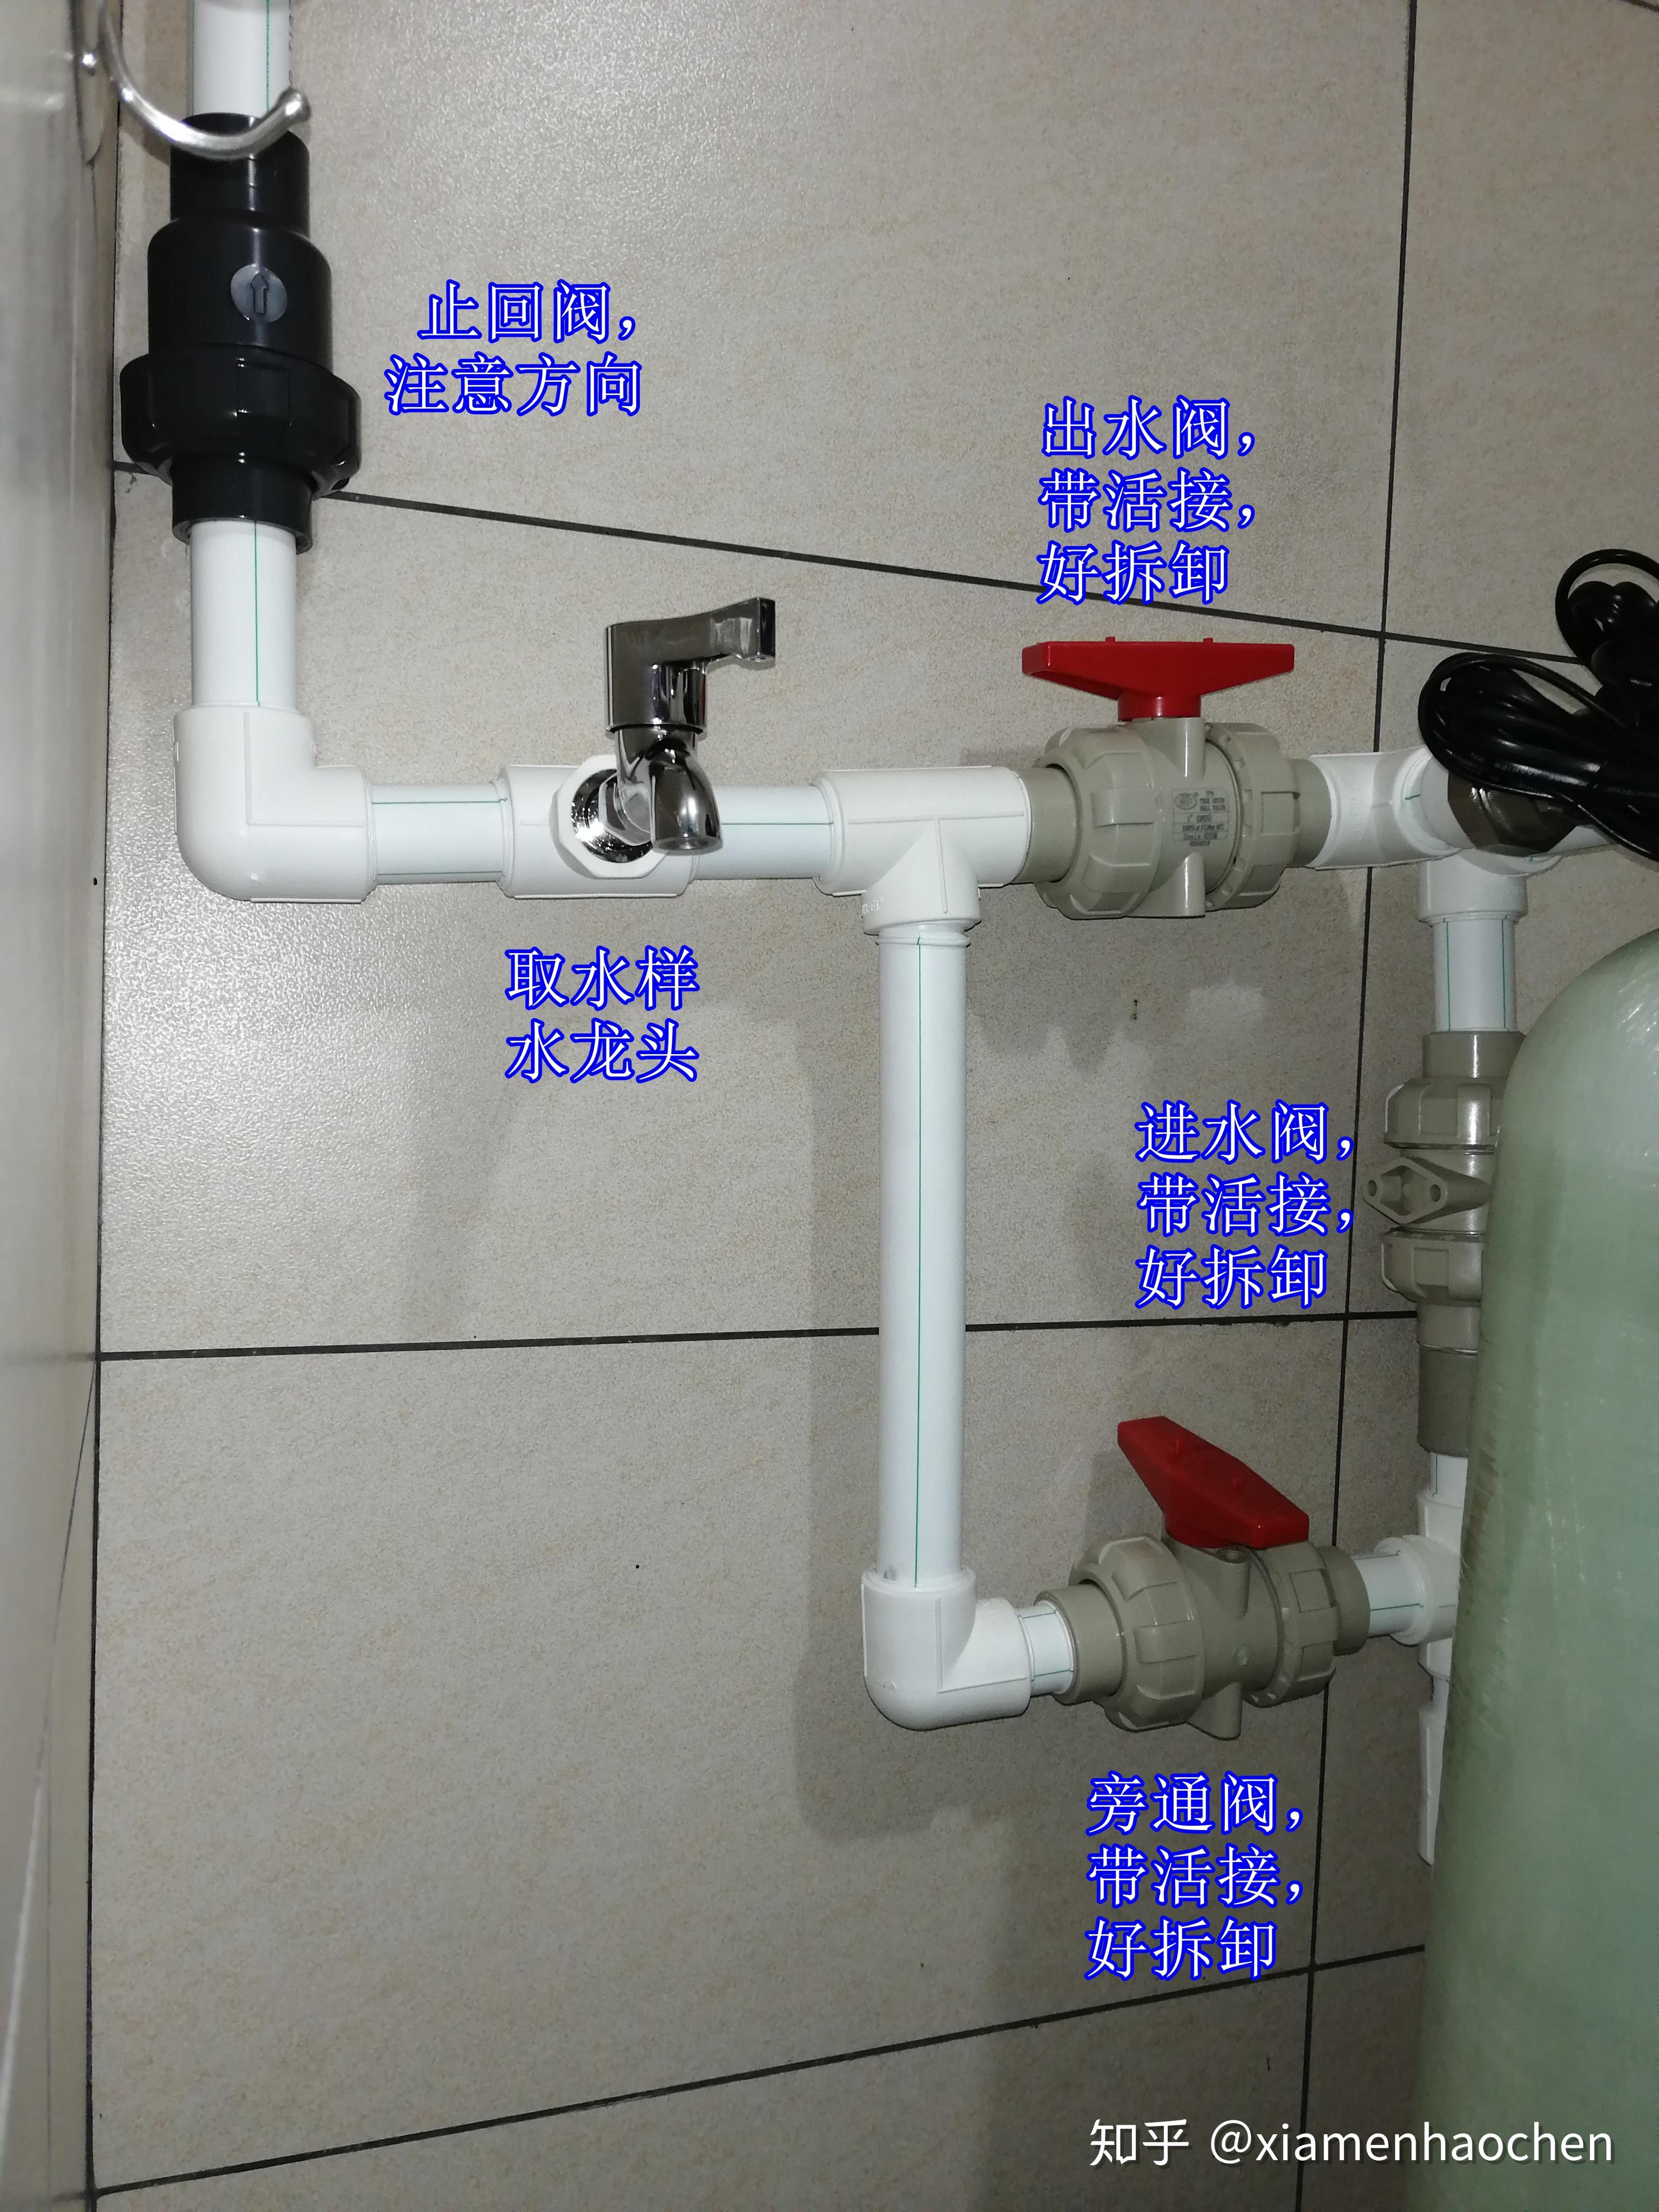 全屋中央净水系统中家用软水机选型安装diy全纪录 - 知乎